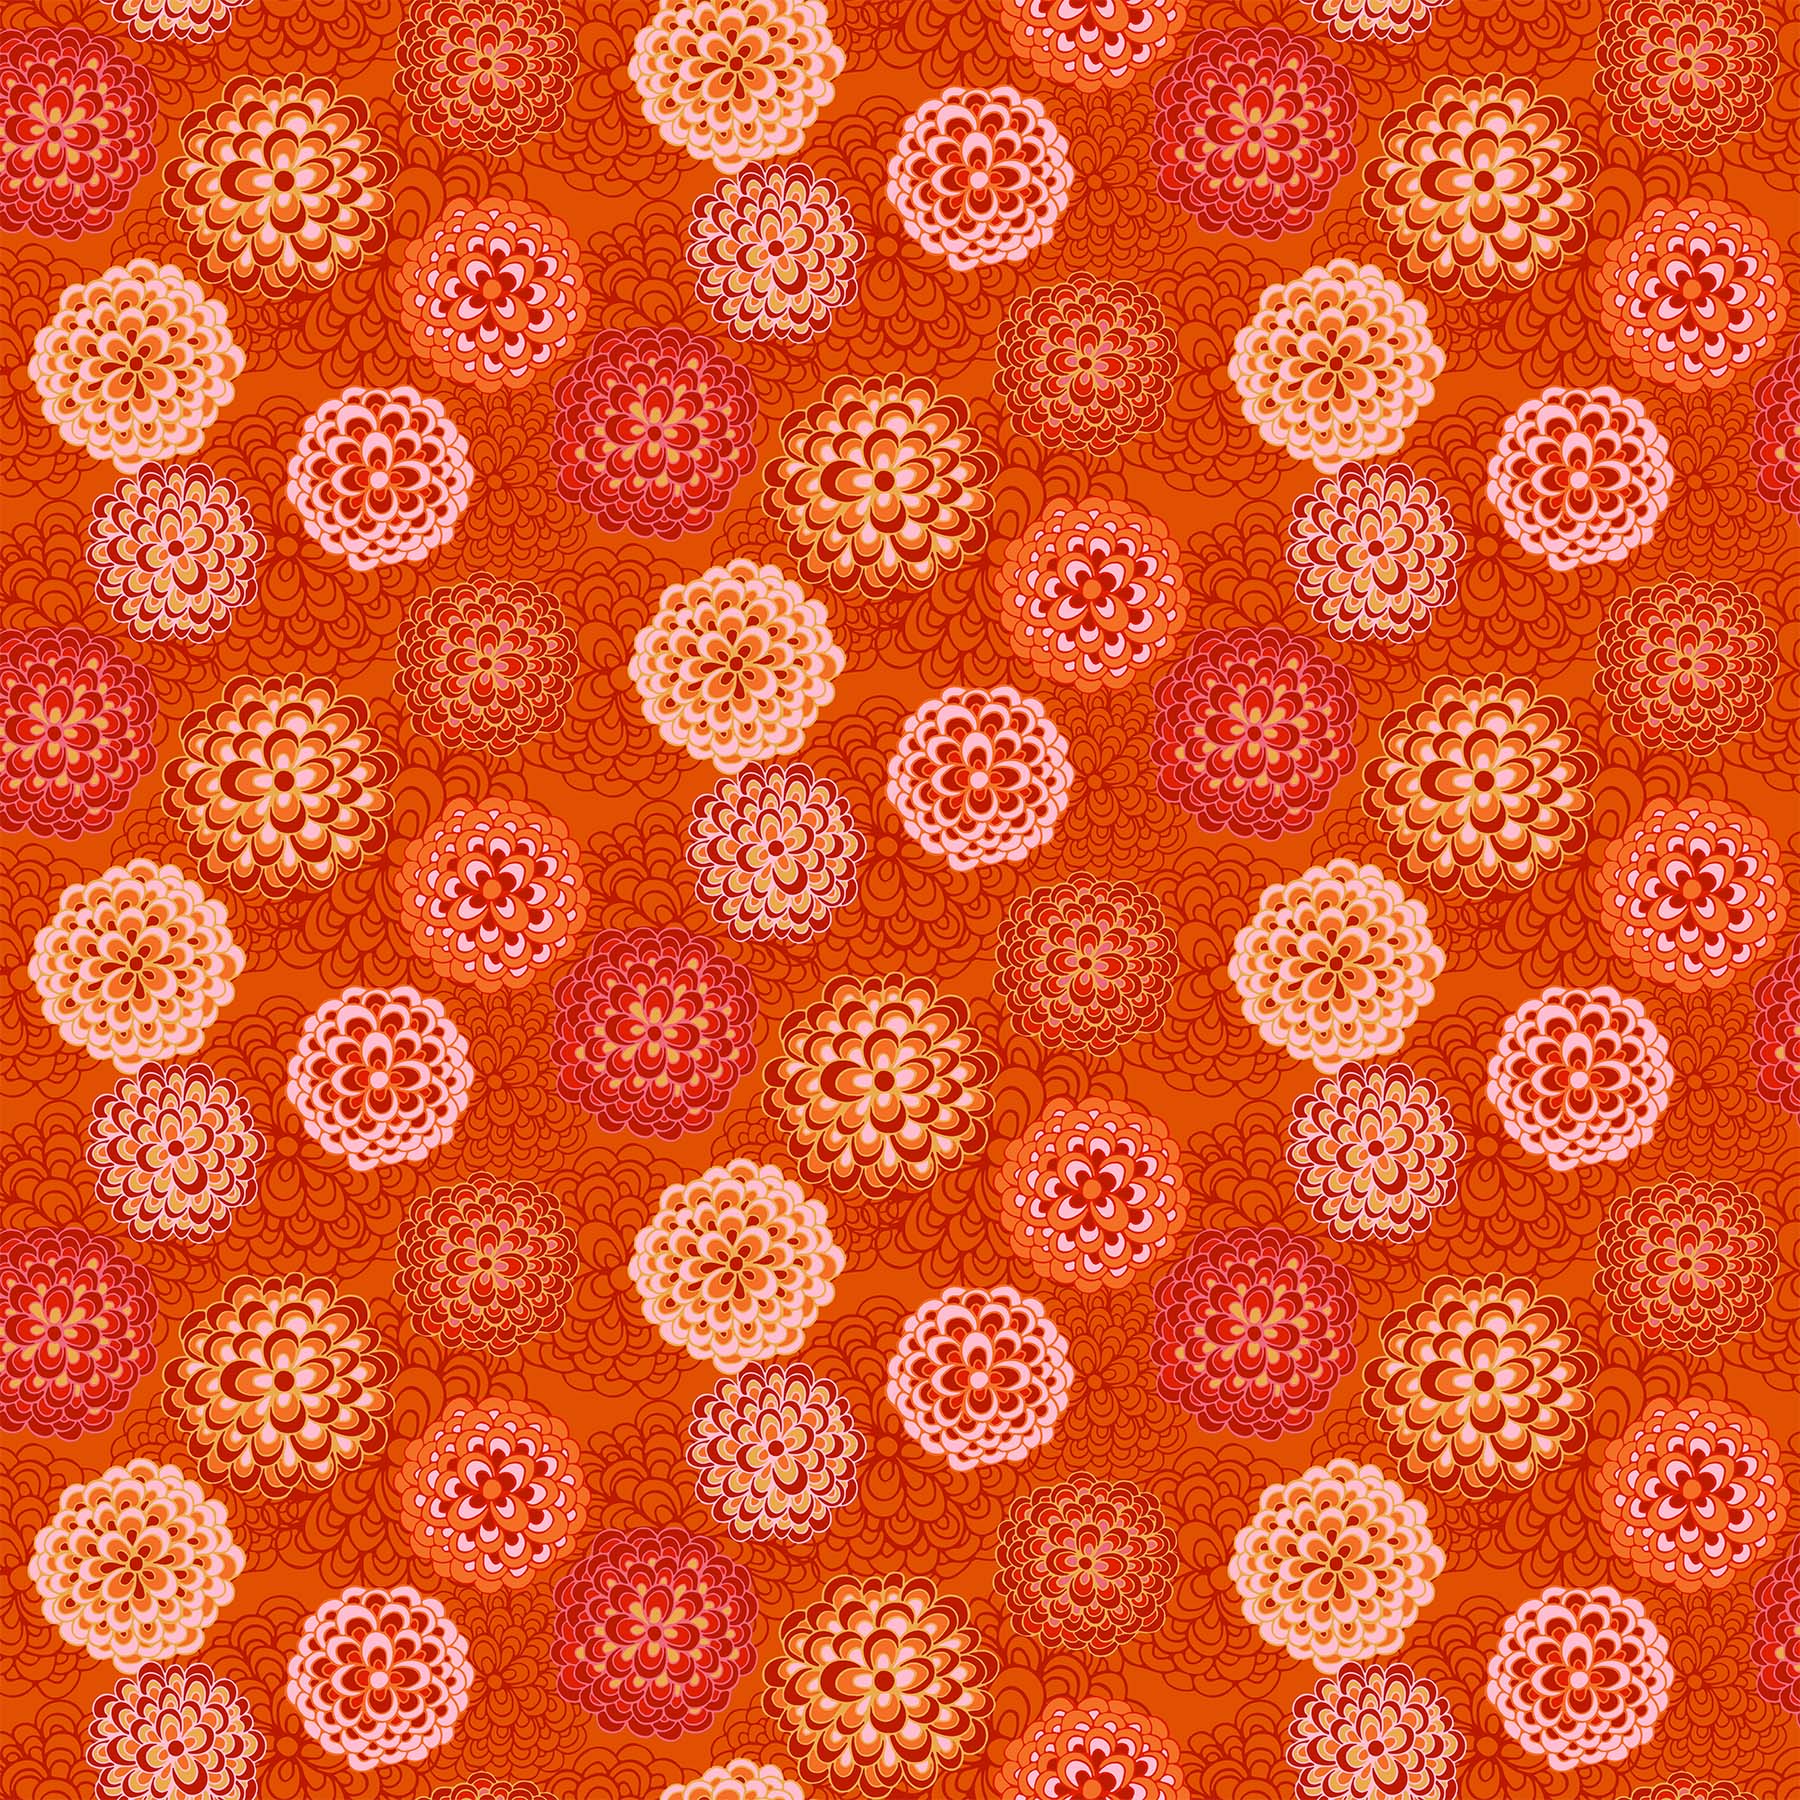 Happiness Quilt Fabric - Pompom Dahlias in Orange/Multi - 90595-56